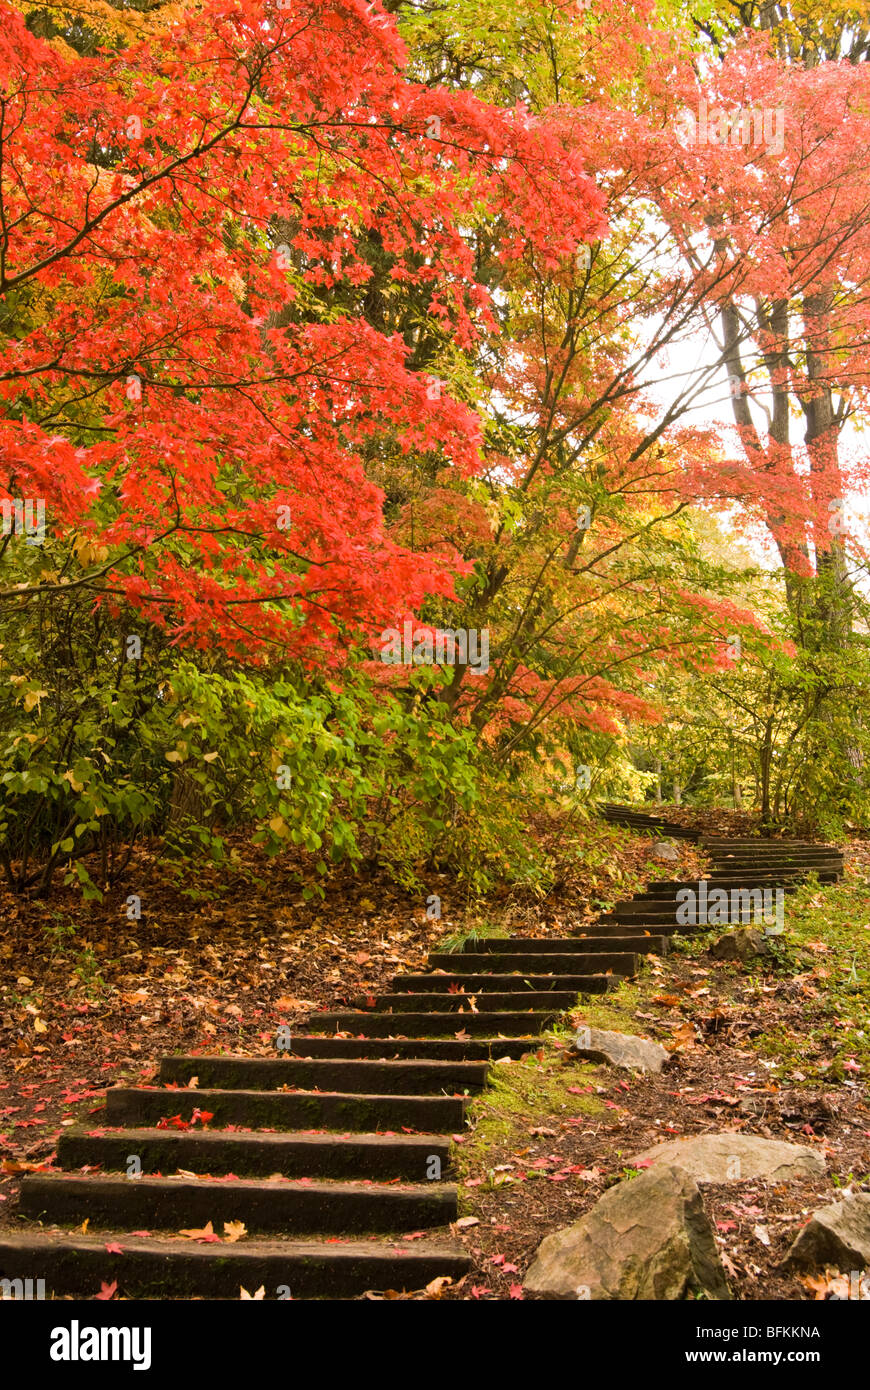 Un escalier mène au couleurs d'automne au Seattle's Washington Park Arboretum. Banque D'Images